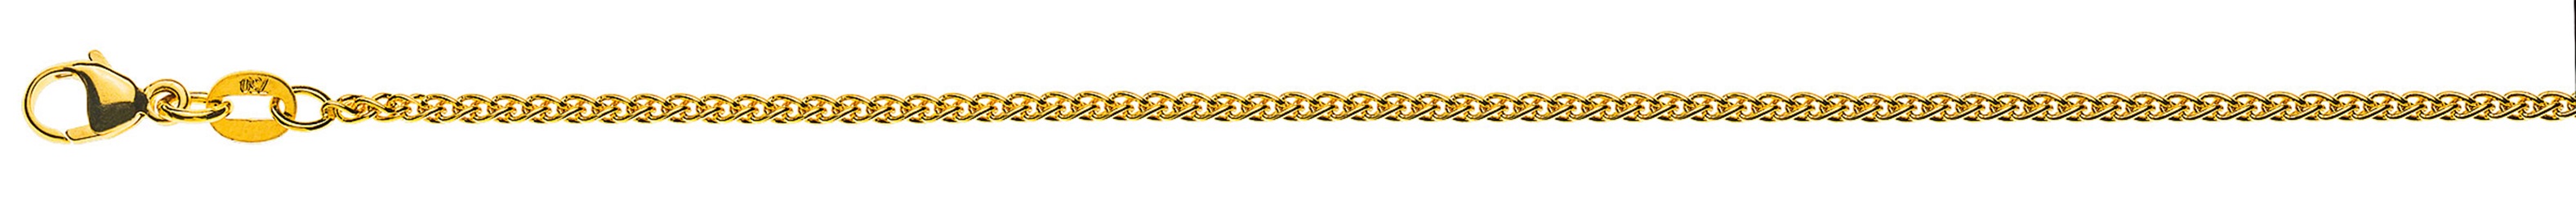 AURONOS Prestige Halskette Gelbgold 18K Zopfkette 60cm 1.6mm